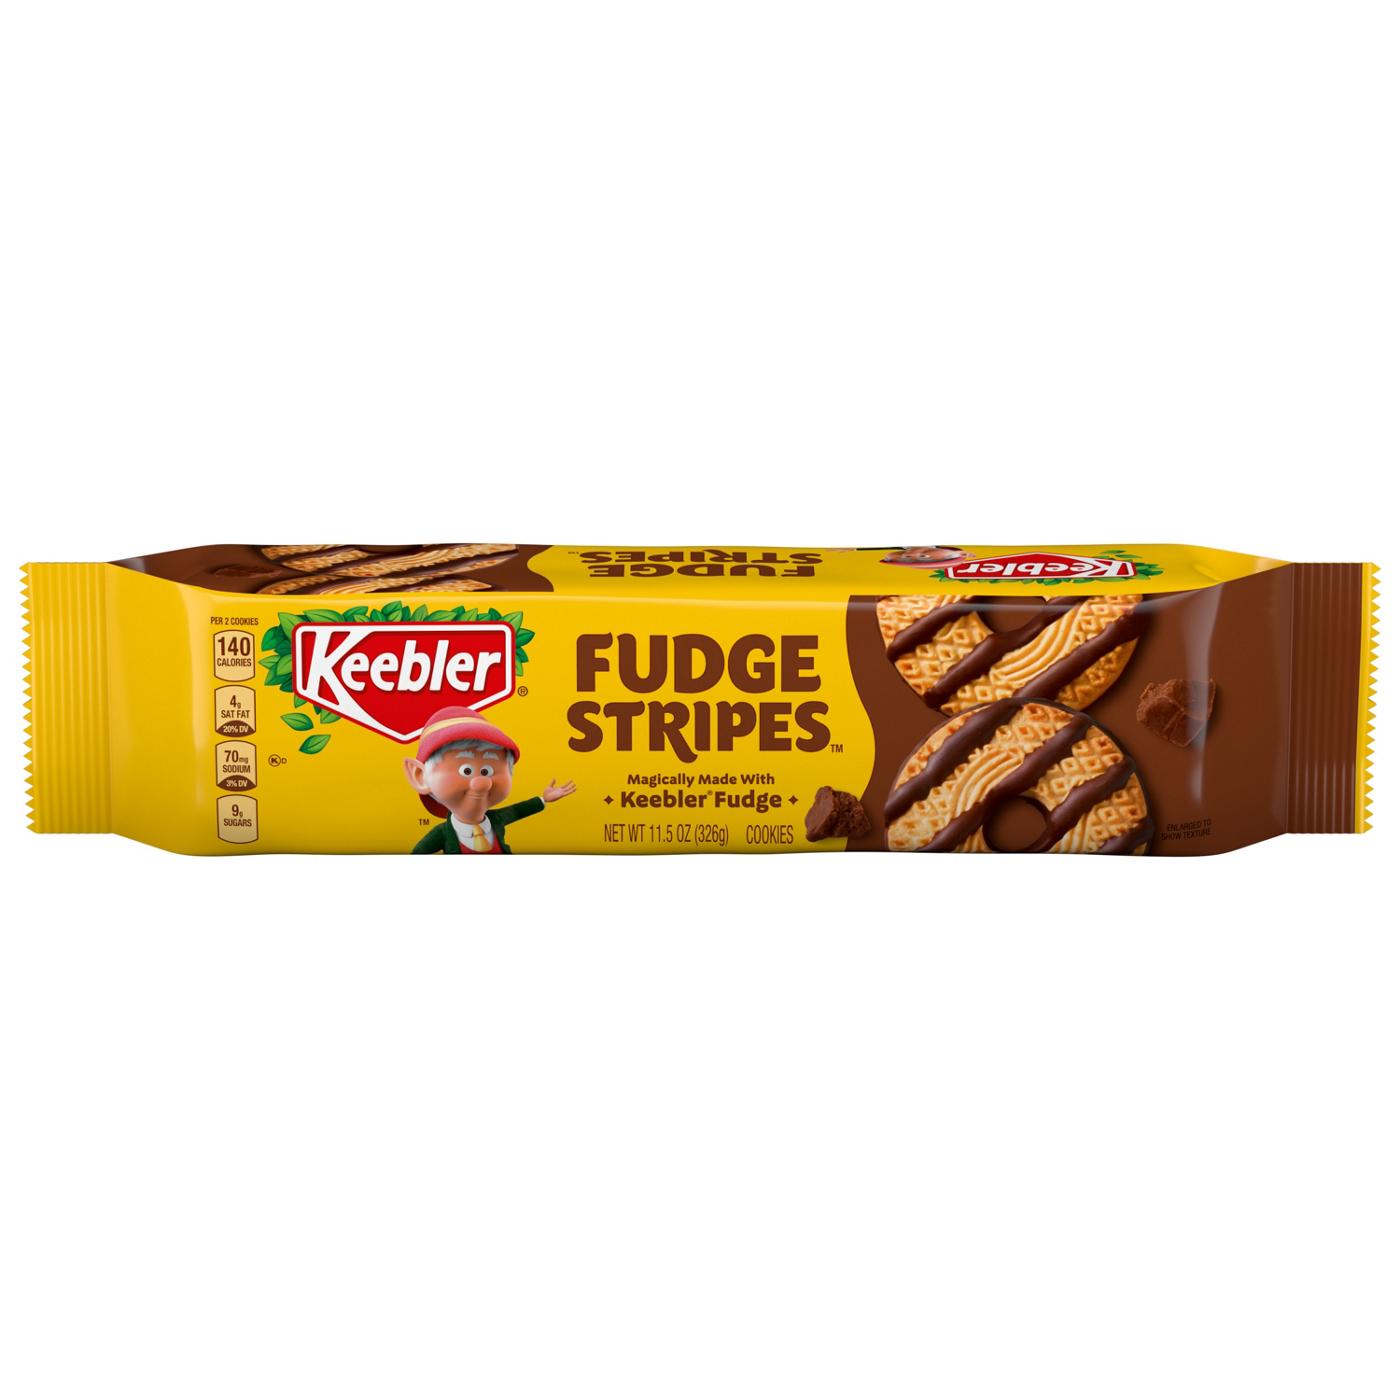 Keebler Fudge Stripes Cookies; image 1 of 5